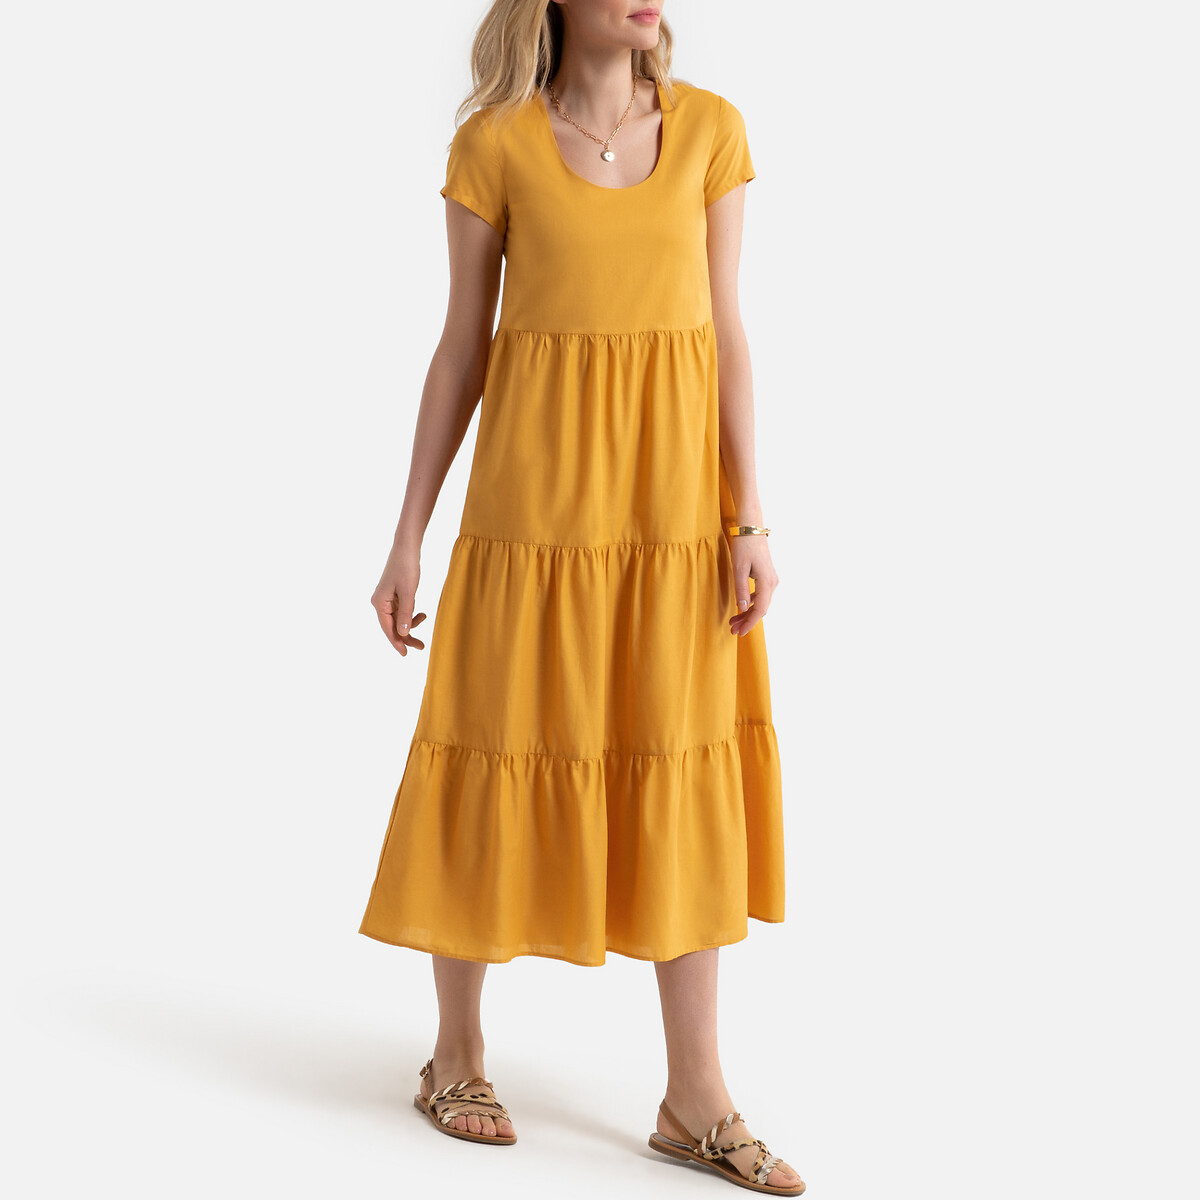 Платье LaRedoute Длинное расклешенное с короткими рукавами 46 (FR) - 52 (RUS) желтый, размер 46 (FR) - 52 (RUS) Длинное расклешенное с короткими рукавами 46 (FR) - 52 (RUS) желтый - фото 1